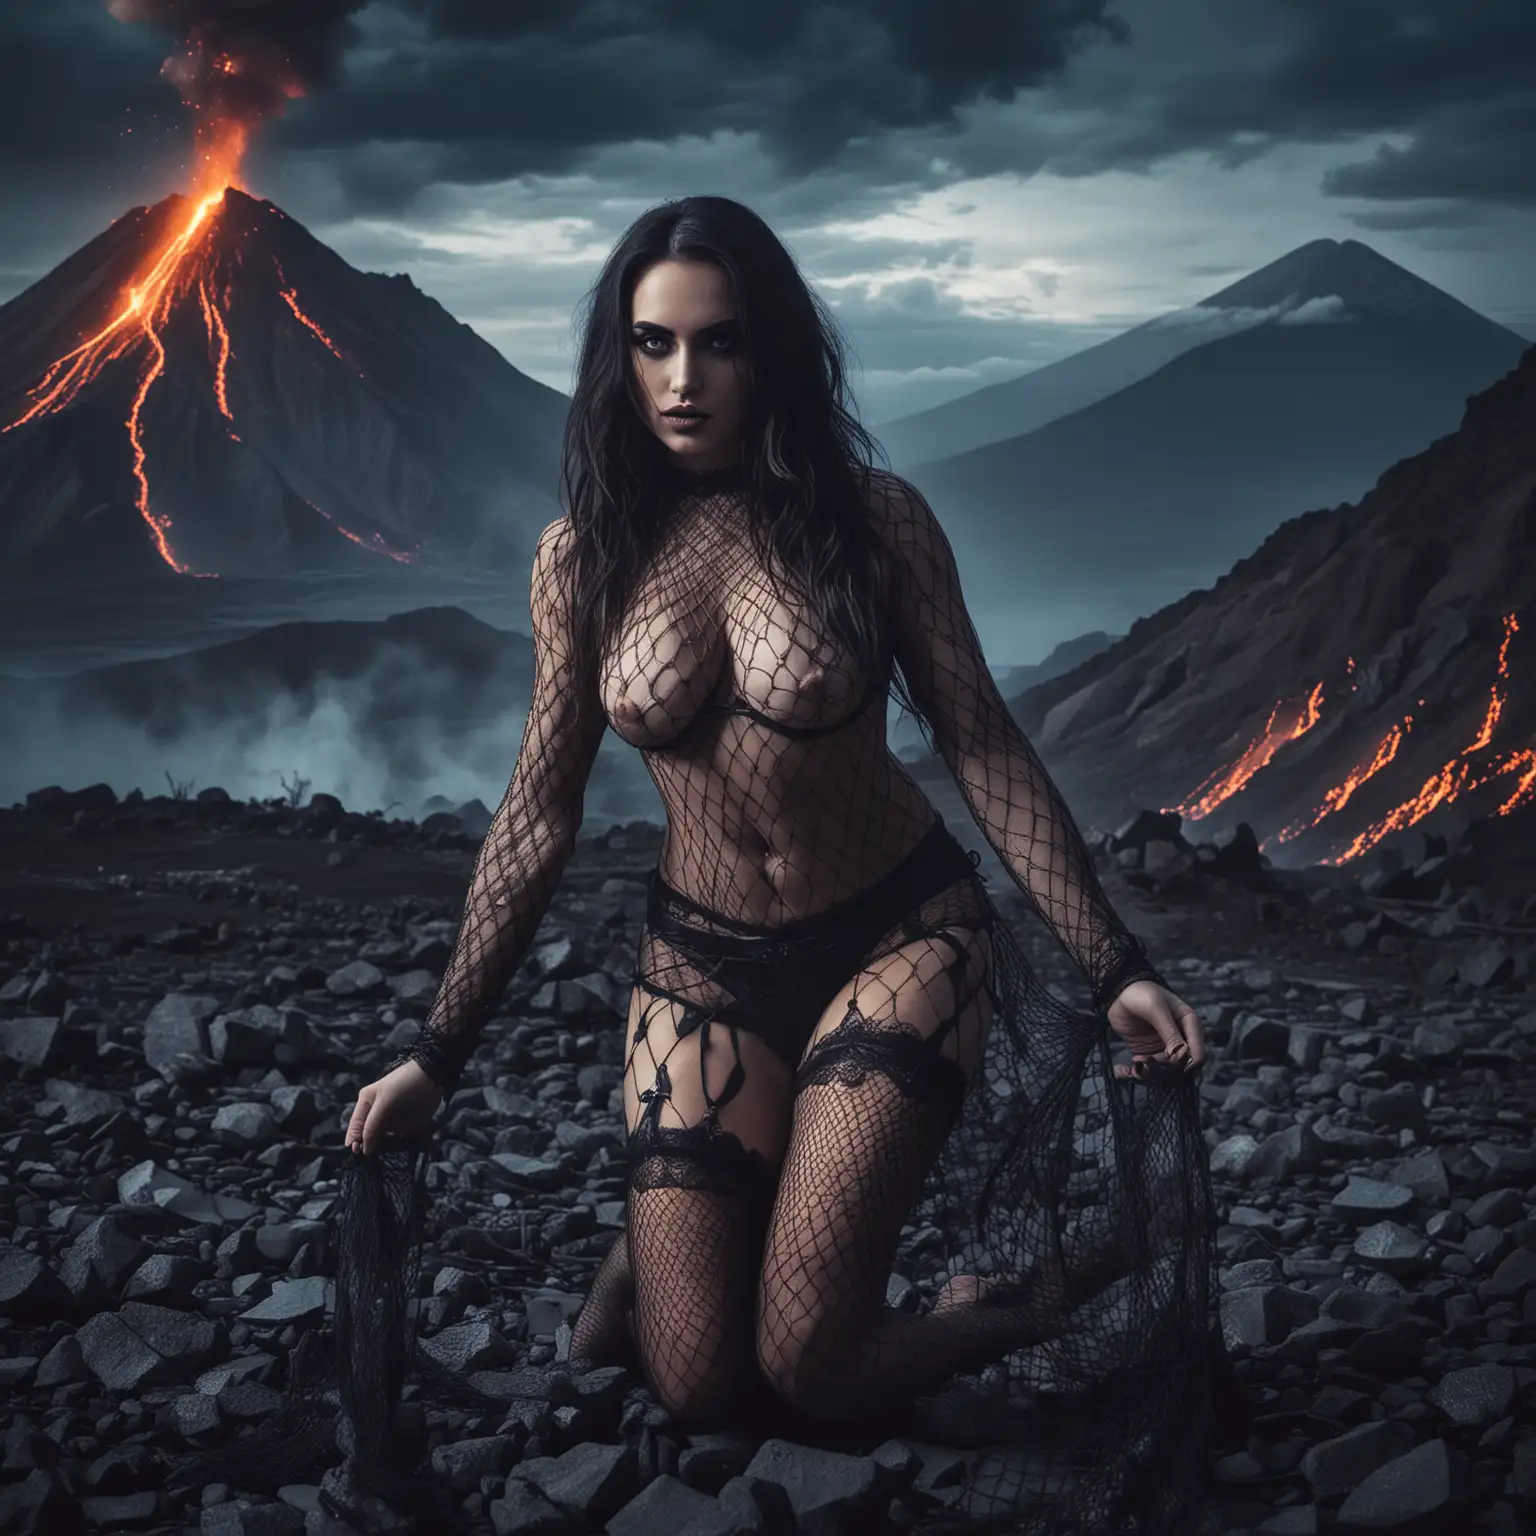 Demone donna in calze a rete autoreggenti, 
Sfondo un vulcano, notte , moraocchi azzurri